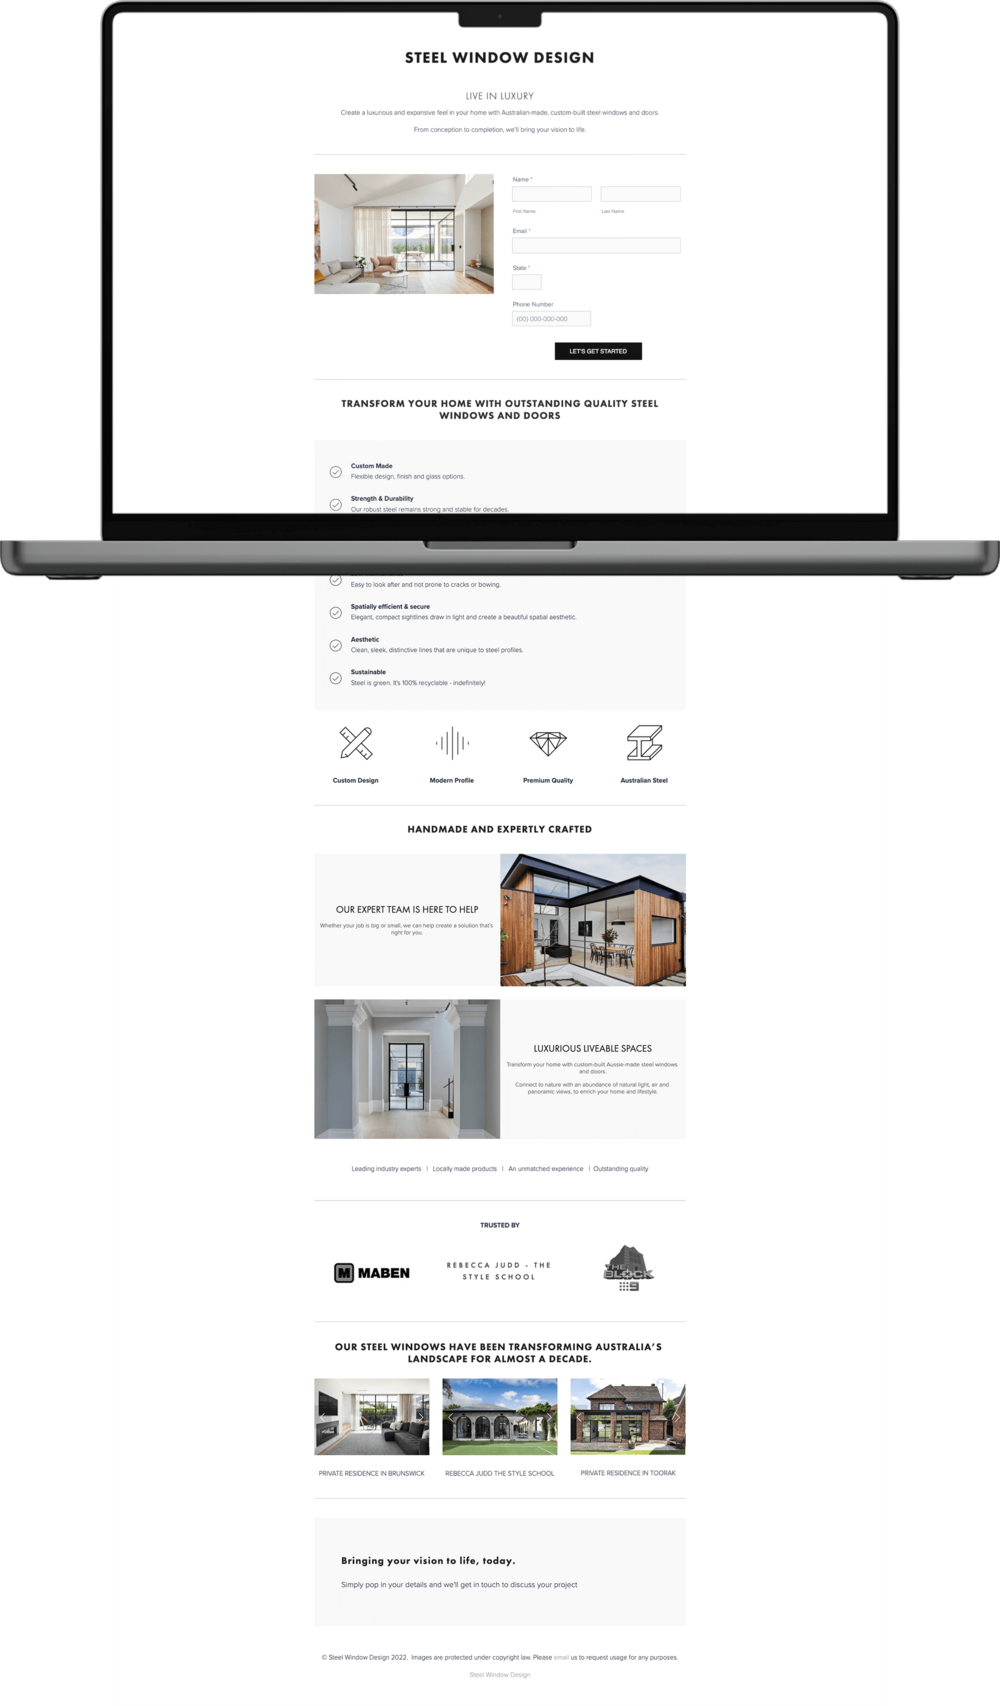 Steel Window Design website design mockup